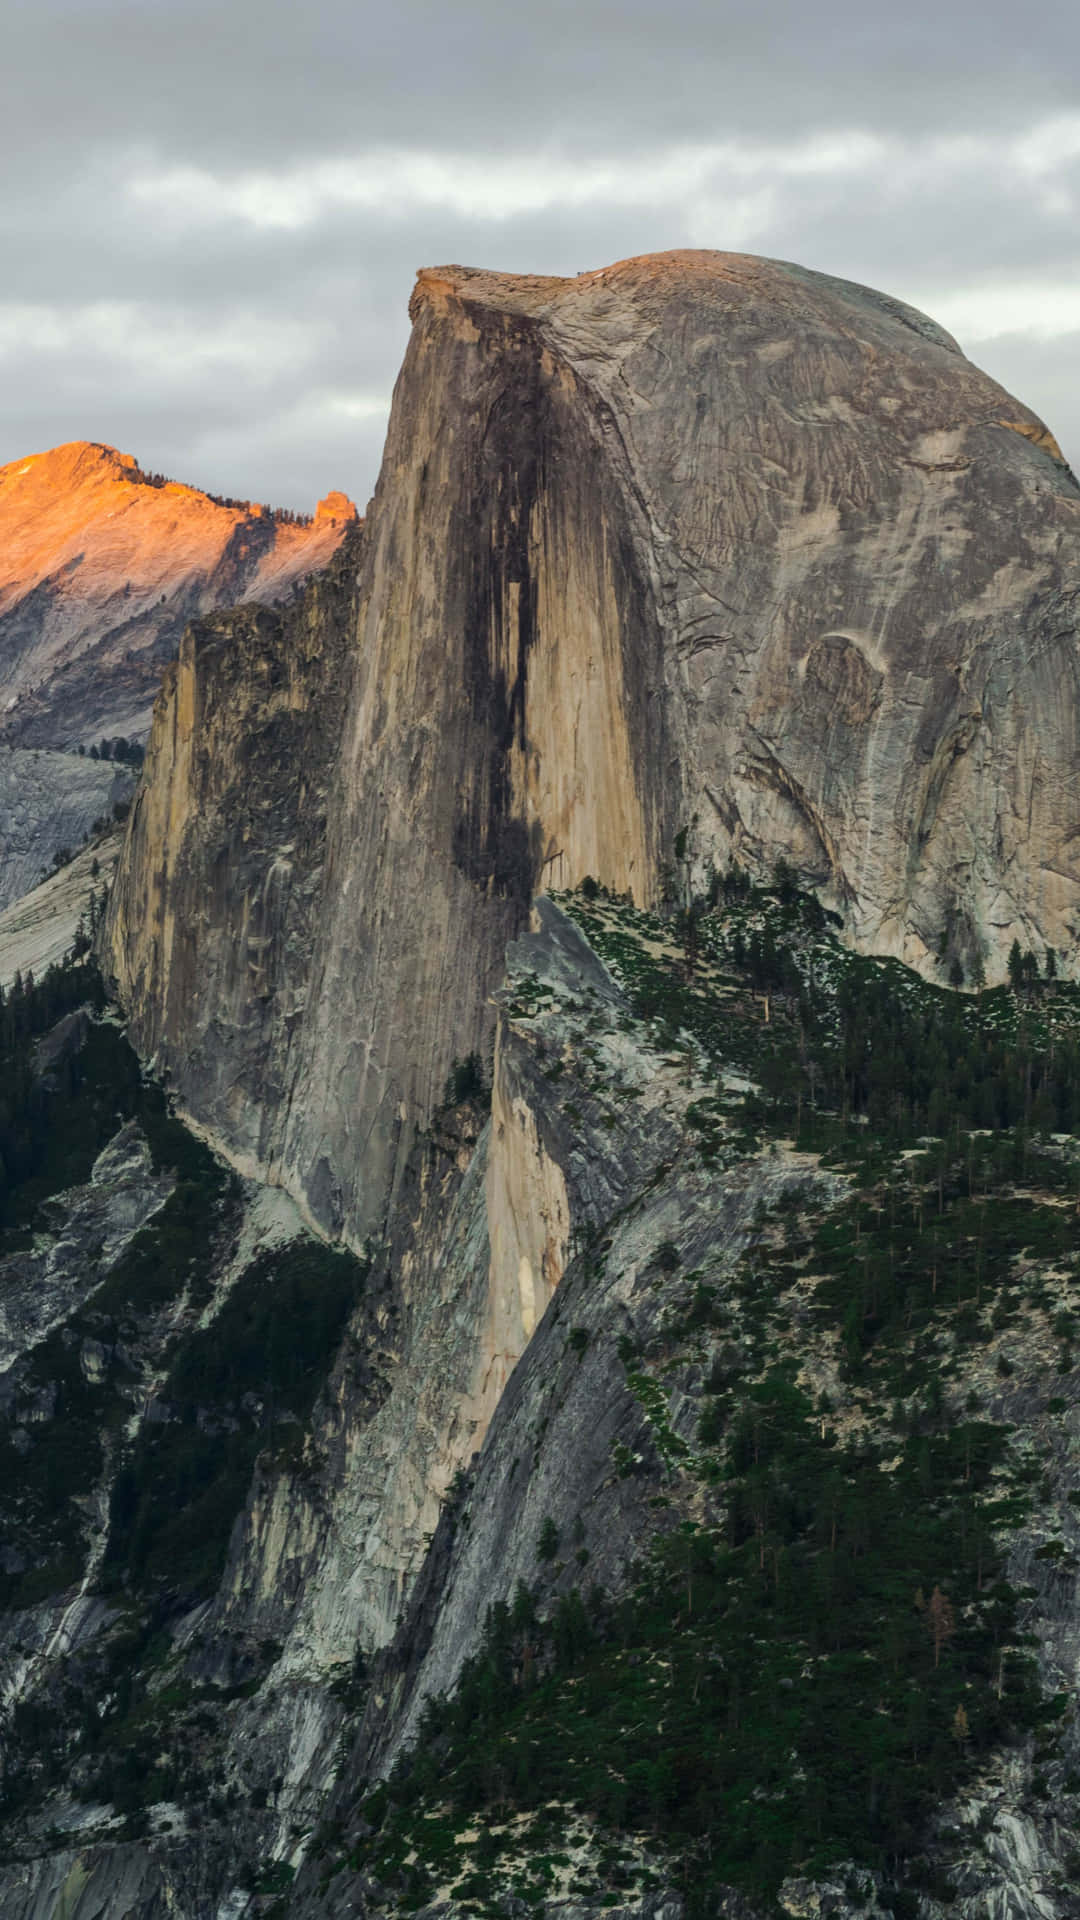 Tag et kig på den smukke udsigt over Californien bjergrække. Wallpaper